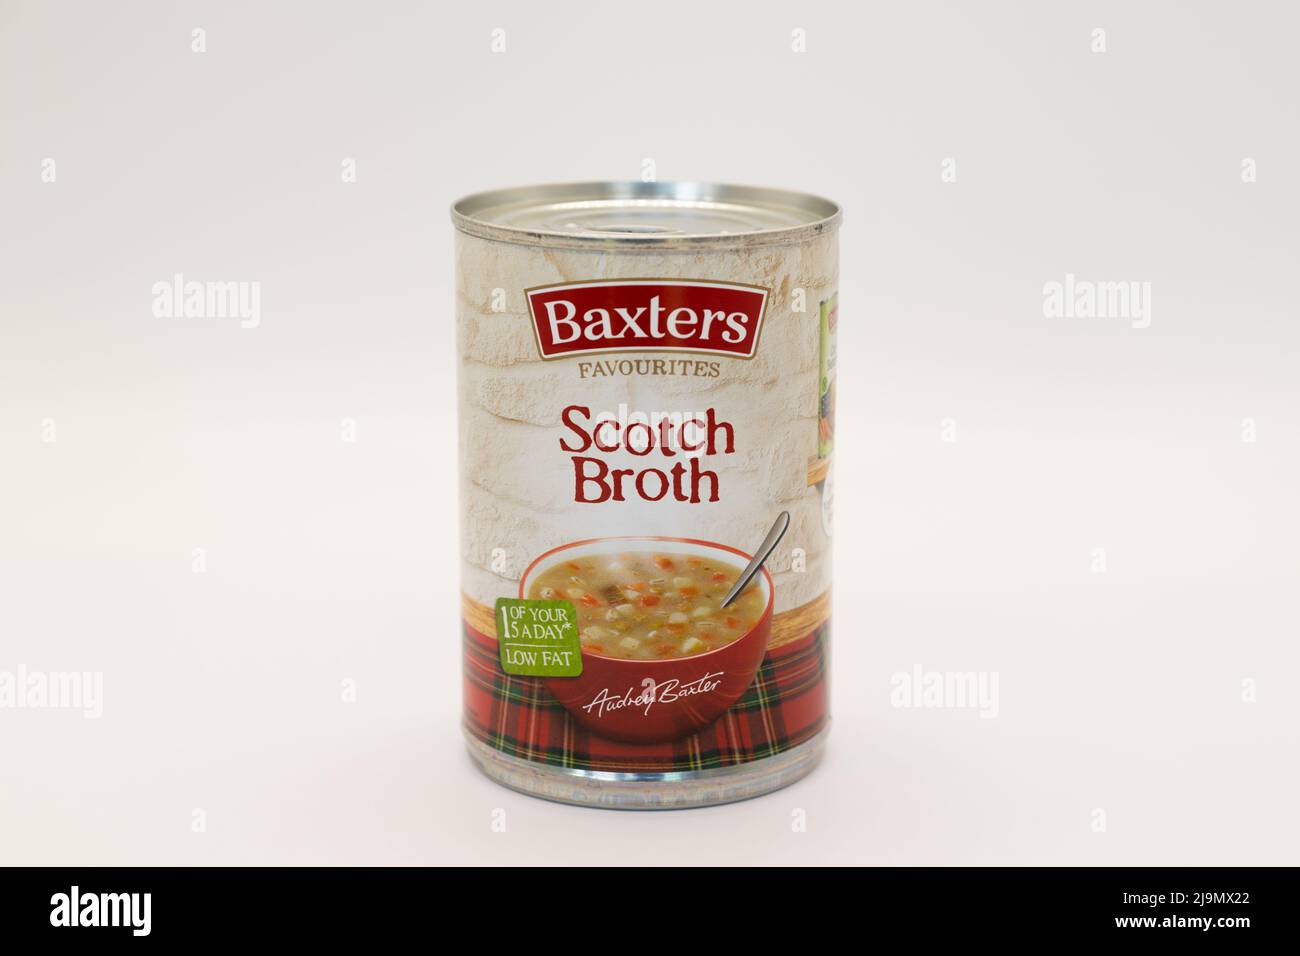 Irvine, Escocia, Reino Unido - 18 de mayo de 2022: Baxters Favorites Scotch Broth en una lata que es reciclable junto con la etiqueta de papel Foto de stock